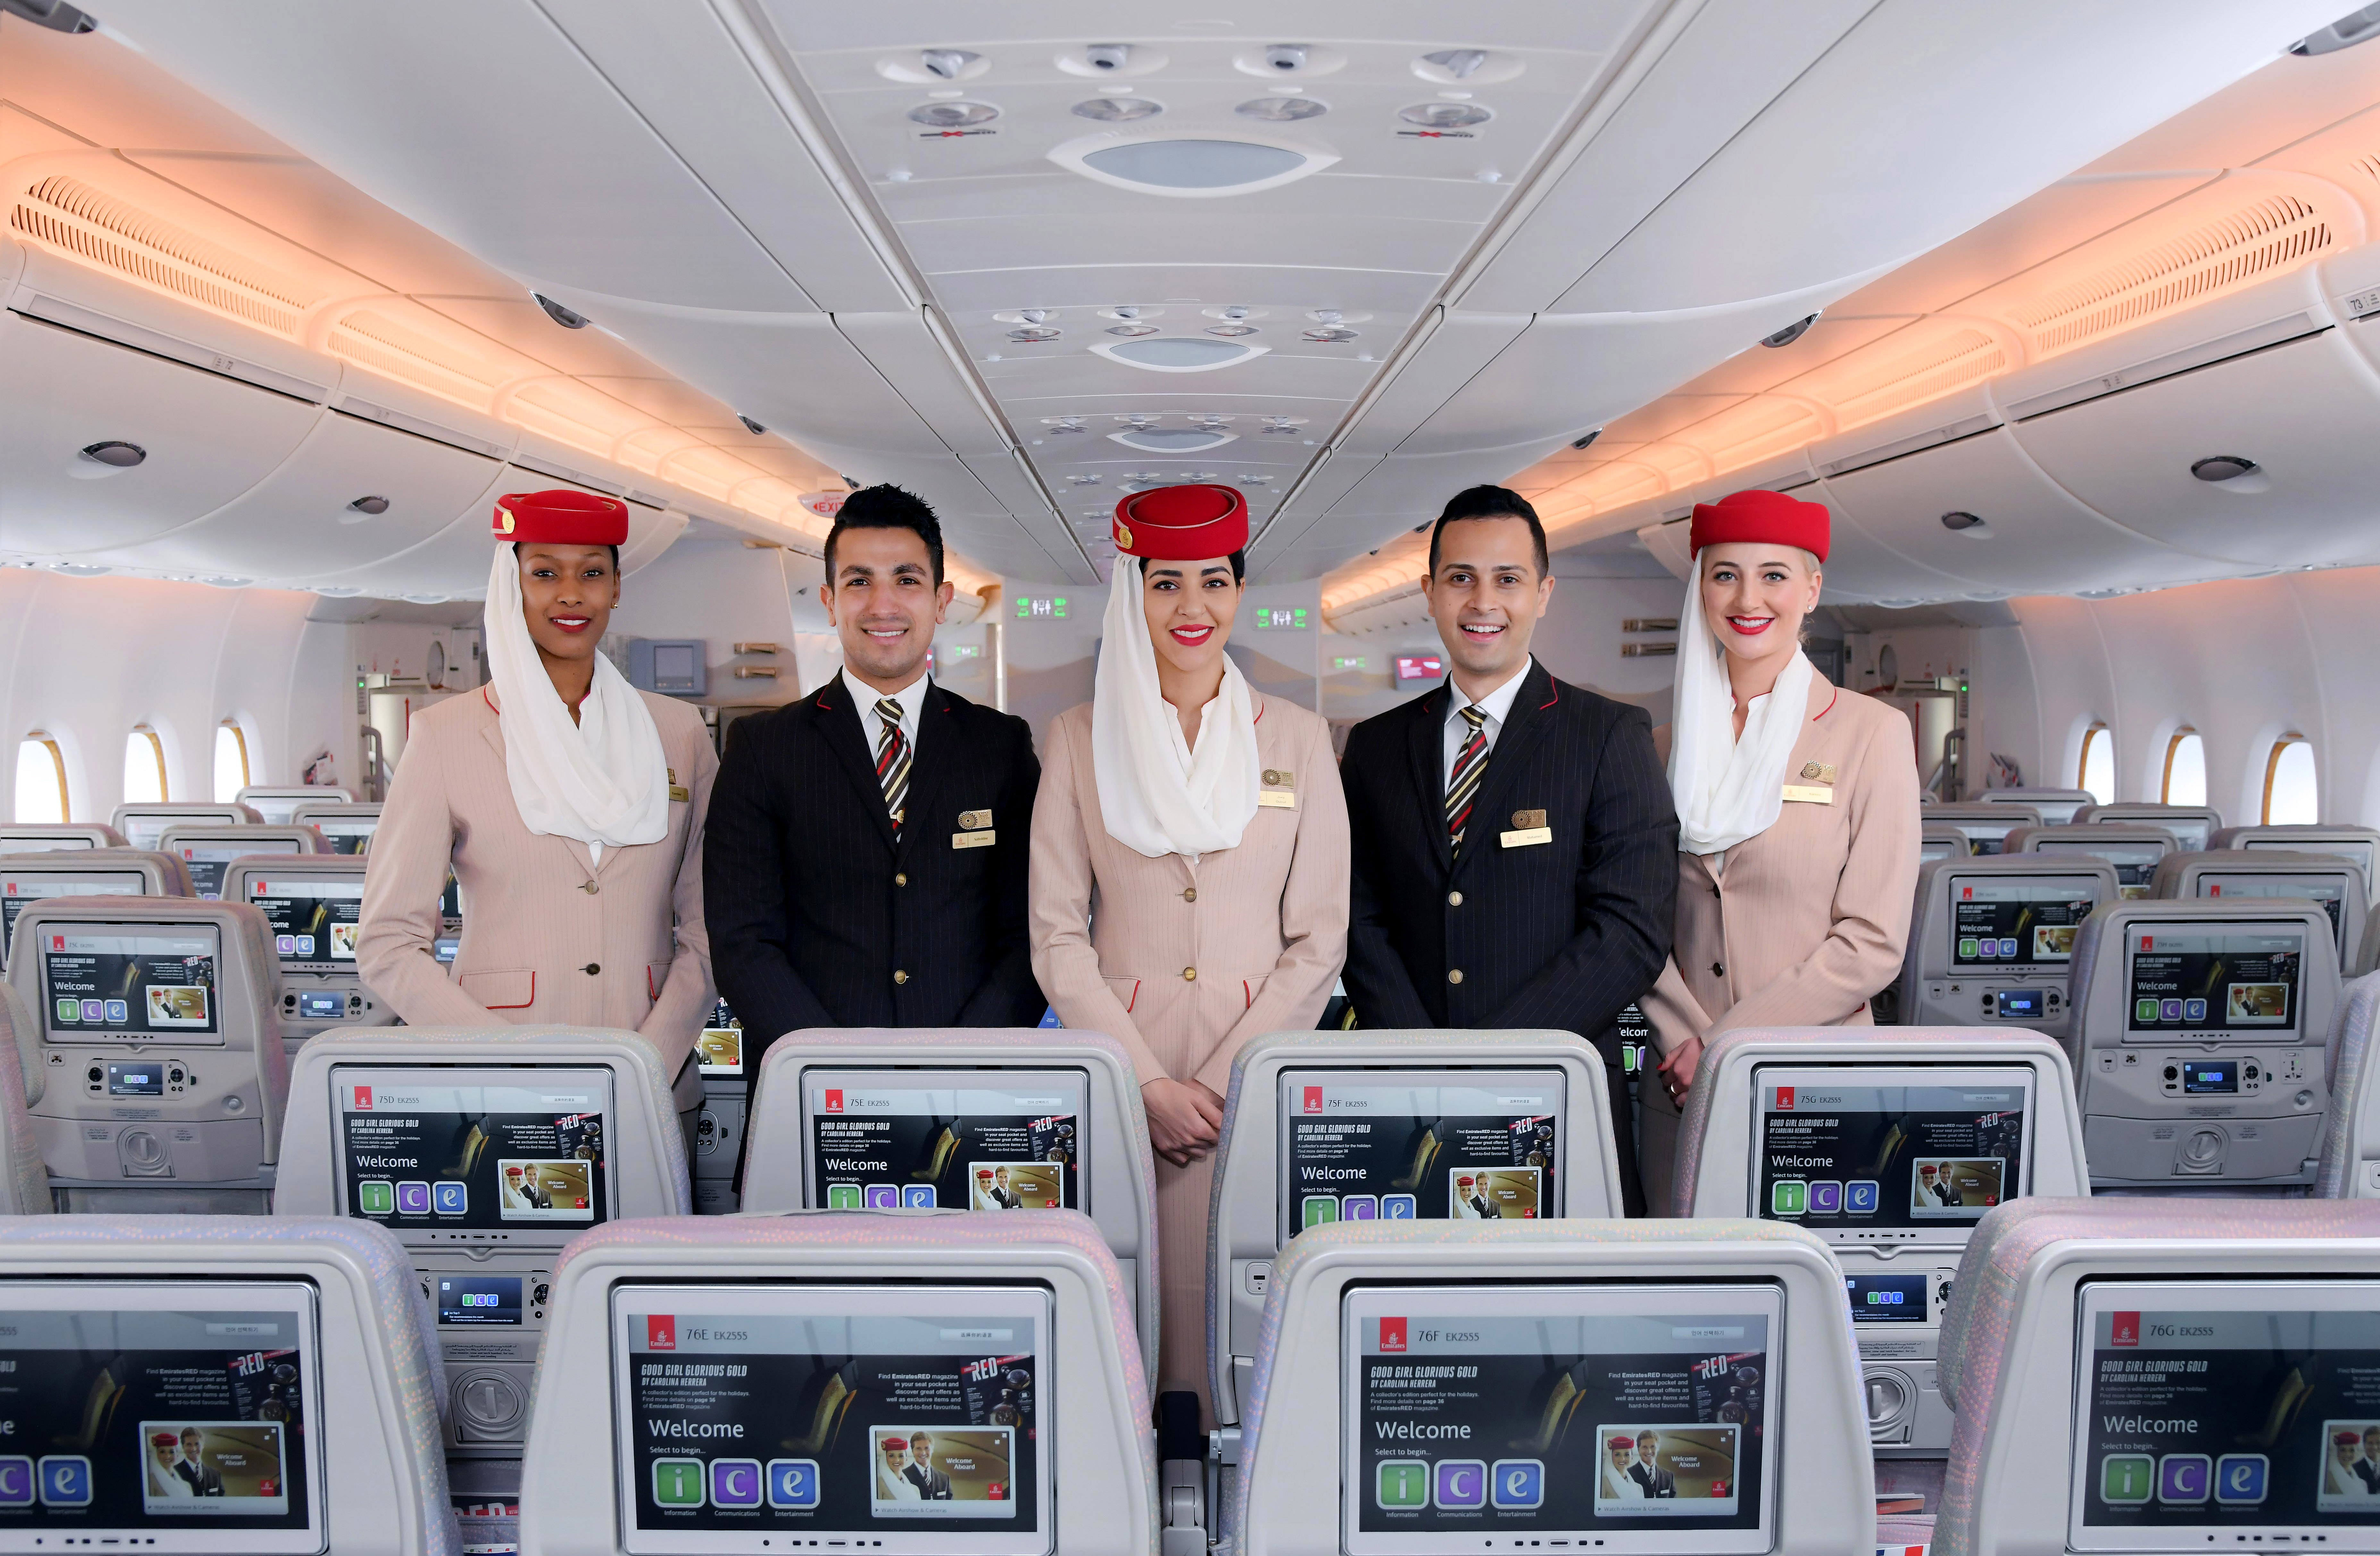 Сайт эмирейтс. Авиакомпания Дубай Эмирейтс. Дубайская авиакомпания Emirates. Аэробус а380-800 Эмирейтс. Emirates Airlines Бортпроводник.